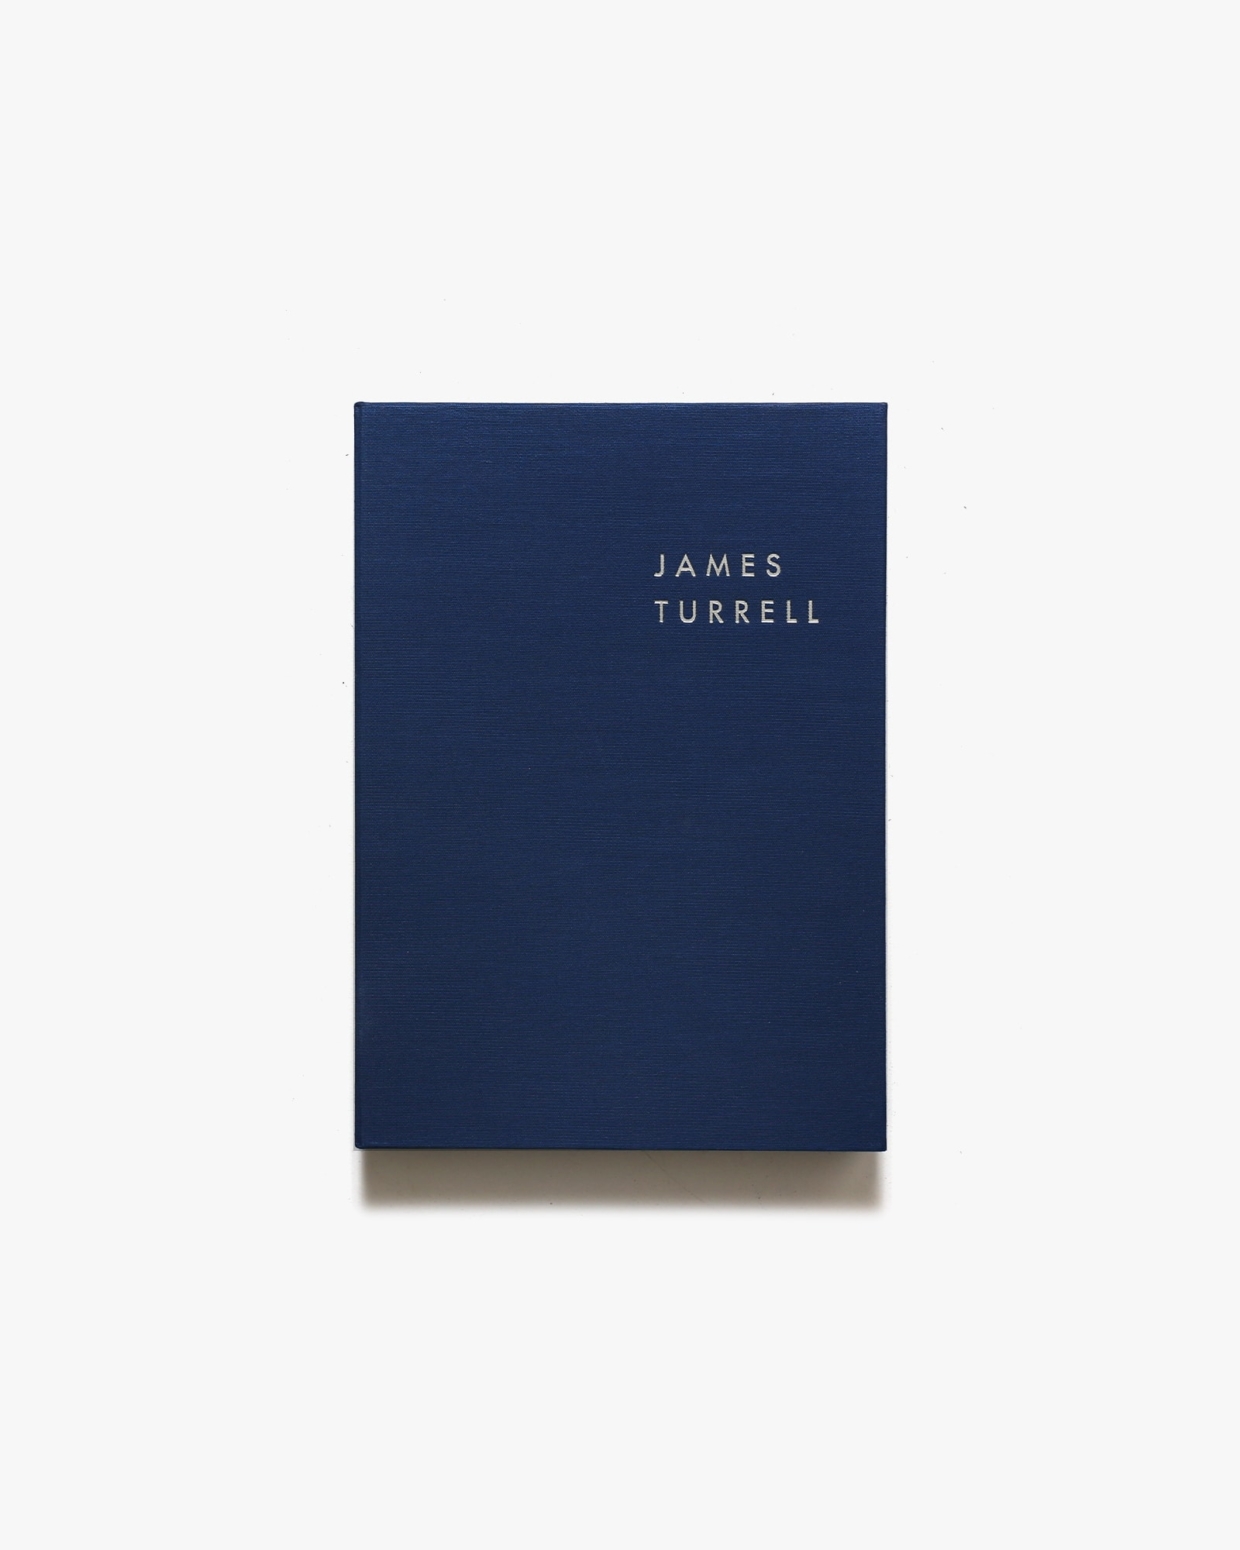 ジェームズ・タレル 未知の光へ | 水戸芸術館現代美術ギャラリー